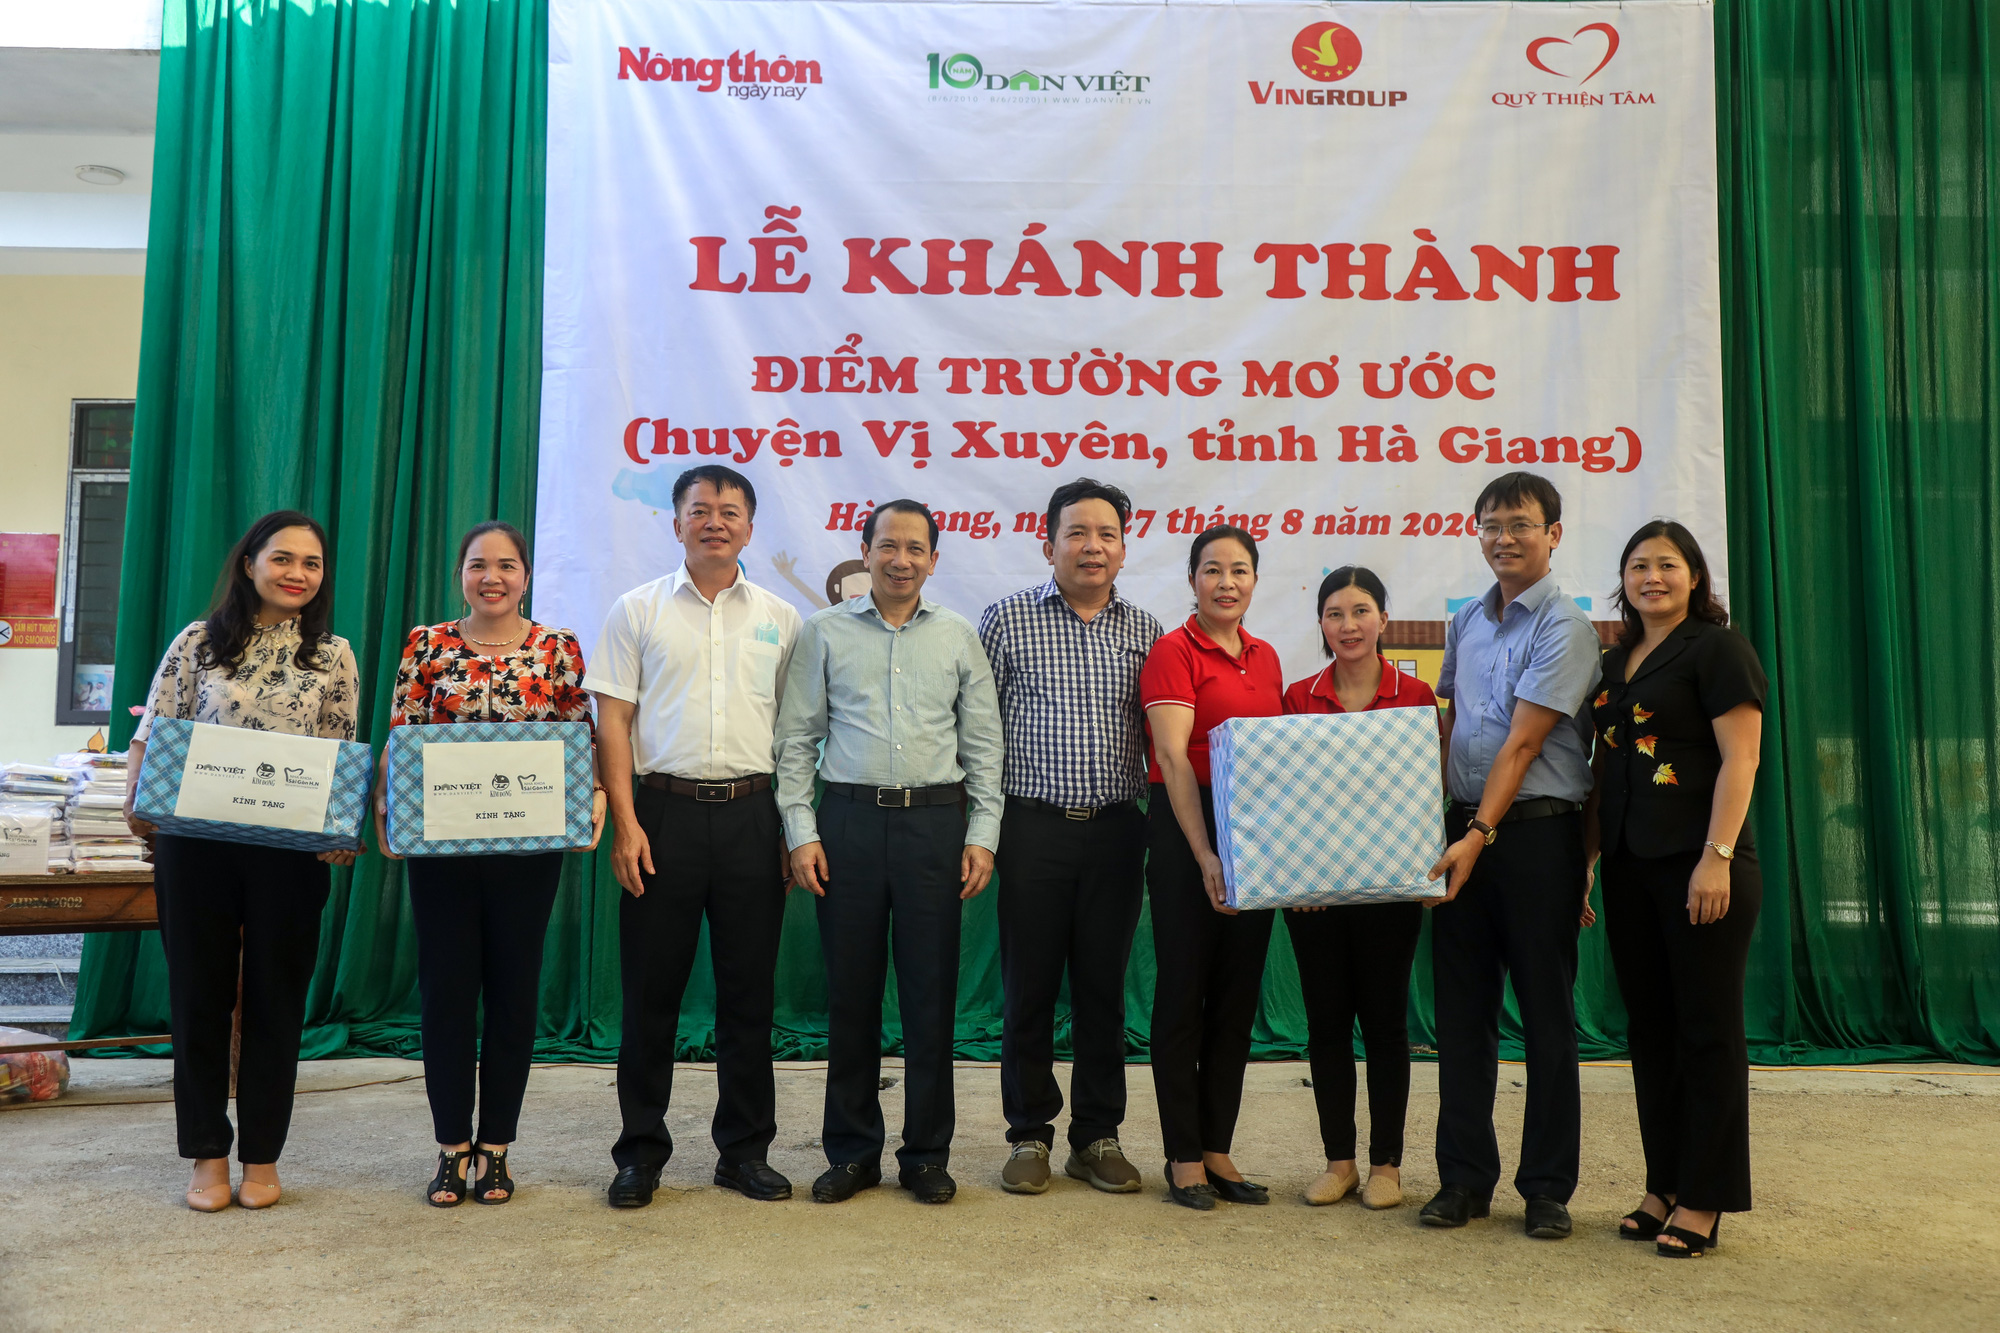 Báo NTNN/Dân Việt - Quỹ Thiện Tâm: Khánh thành “điểm trường mơ ước” đầu tiên tại Hà Giang - Ảnh 8.